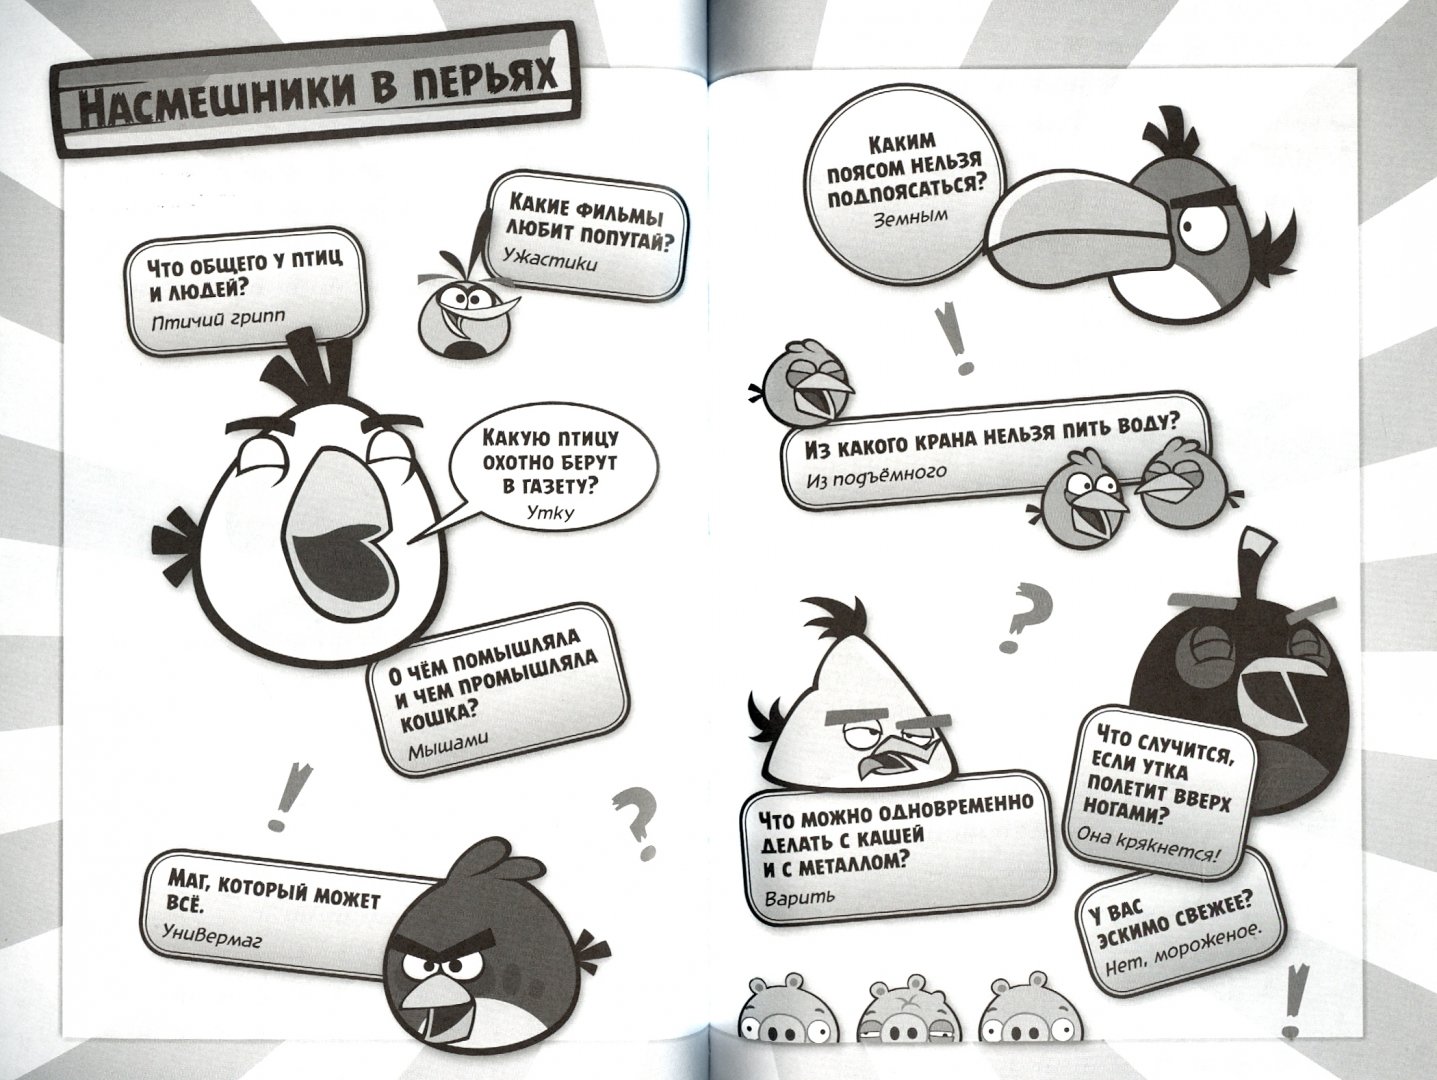 Иллюстрация 1 из 12 для Angry Birds/ Потехе - час! Улётные шутки от птиц и свиней. Обхохочешься! Полнейшее свинство! | Лабиринт - книги. Источник: Лабиринт